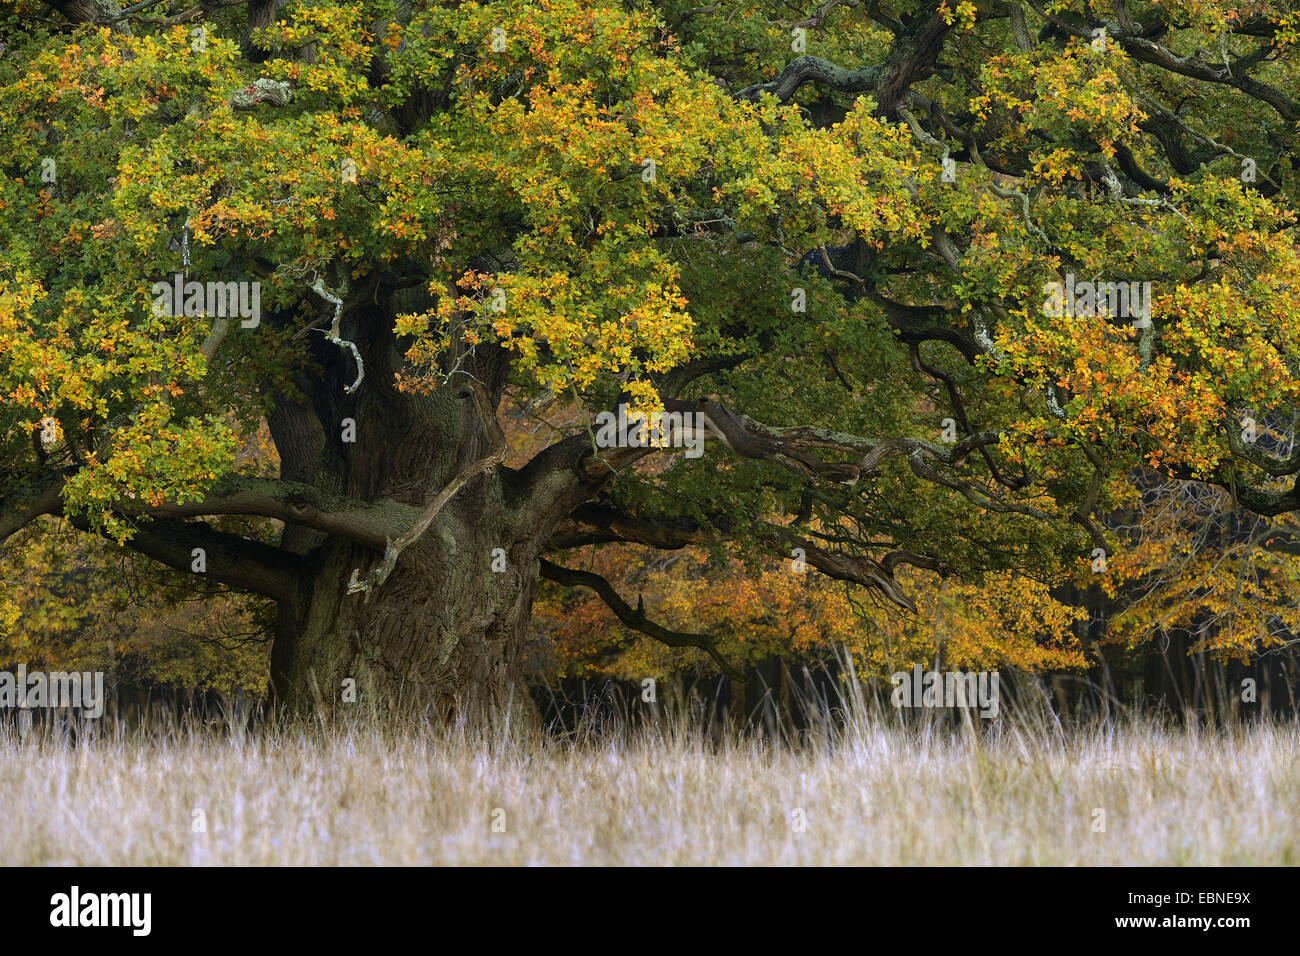 Le chêne commun, le chêne pédonculé, chêne pédonculé (Quercus robur), plusieurs centaines d'années l'arbre avec les feuilles d'automne, Danemark Banque D'Images